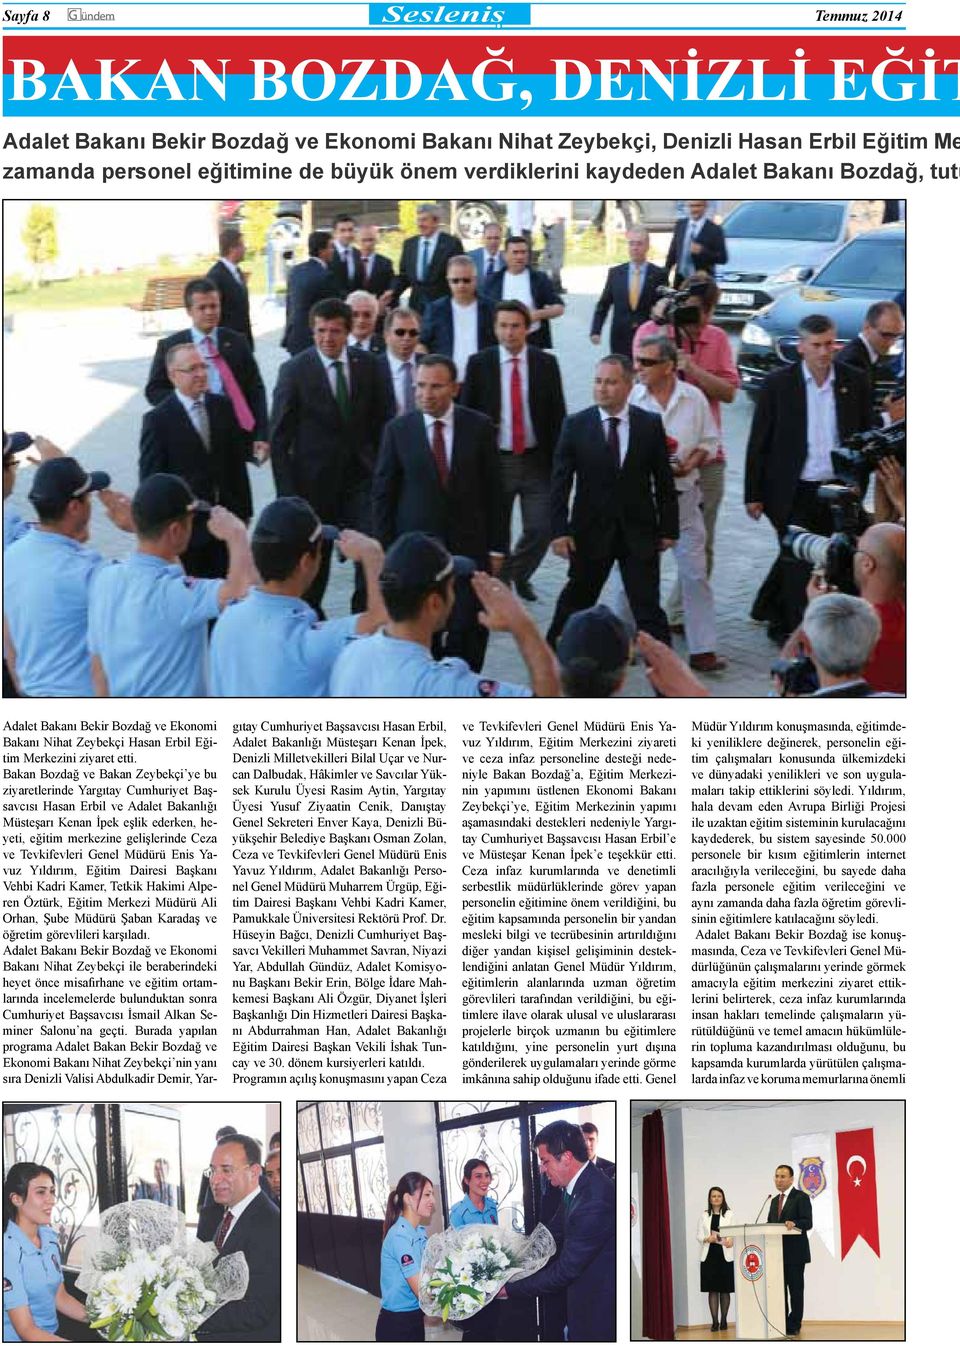 Bakan Bozdağ ve Bakan Zeybekçi ye bu ziyaretlerinde Yargıtay Cumhuriyet Başsavcısı Hasan Erbil ve Adalet Bakanlığı Müsteşarı Kenan İpek eşlik ederken, heyeti, eğitim merkezine gelişlerinde Ceza ve